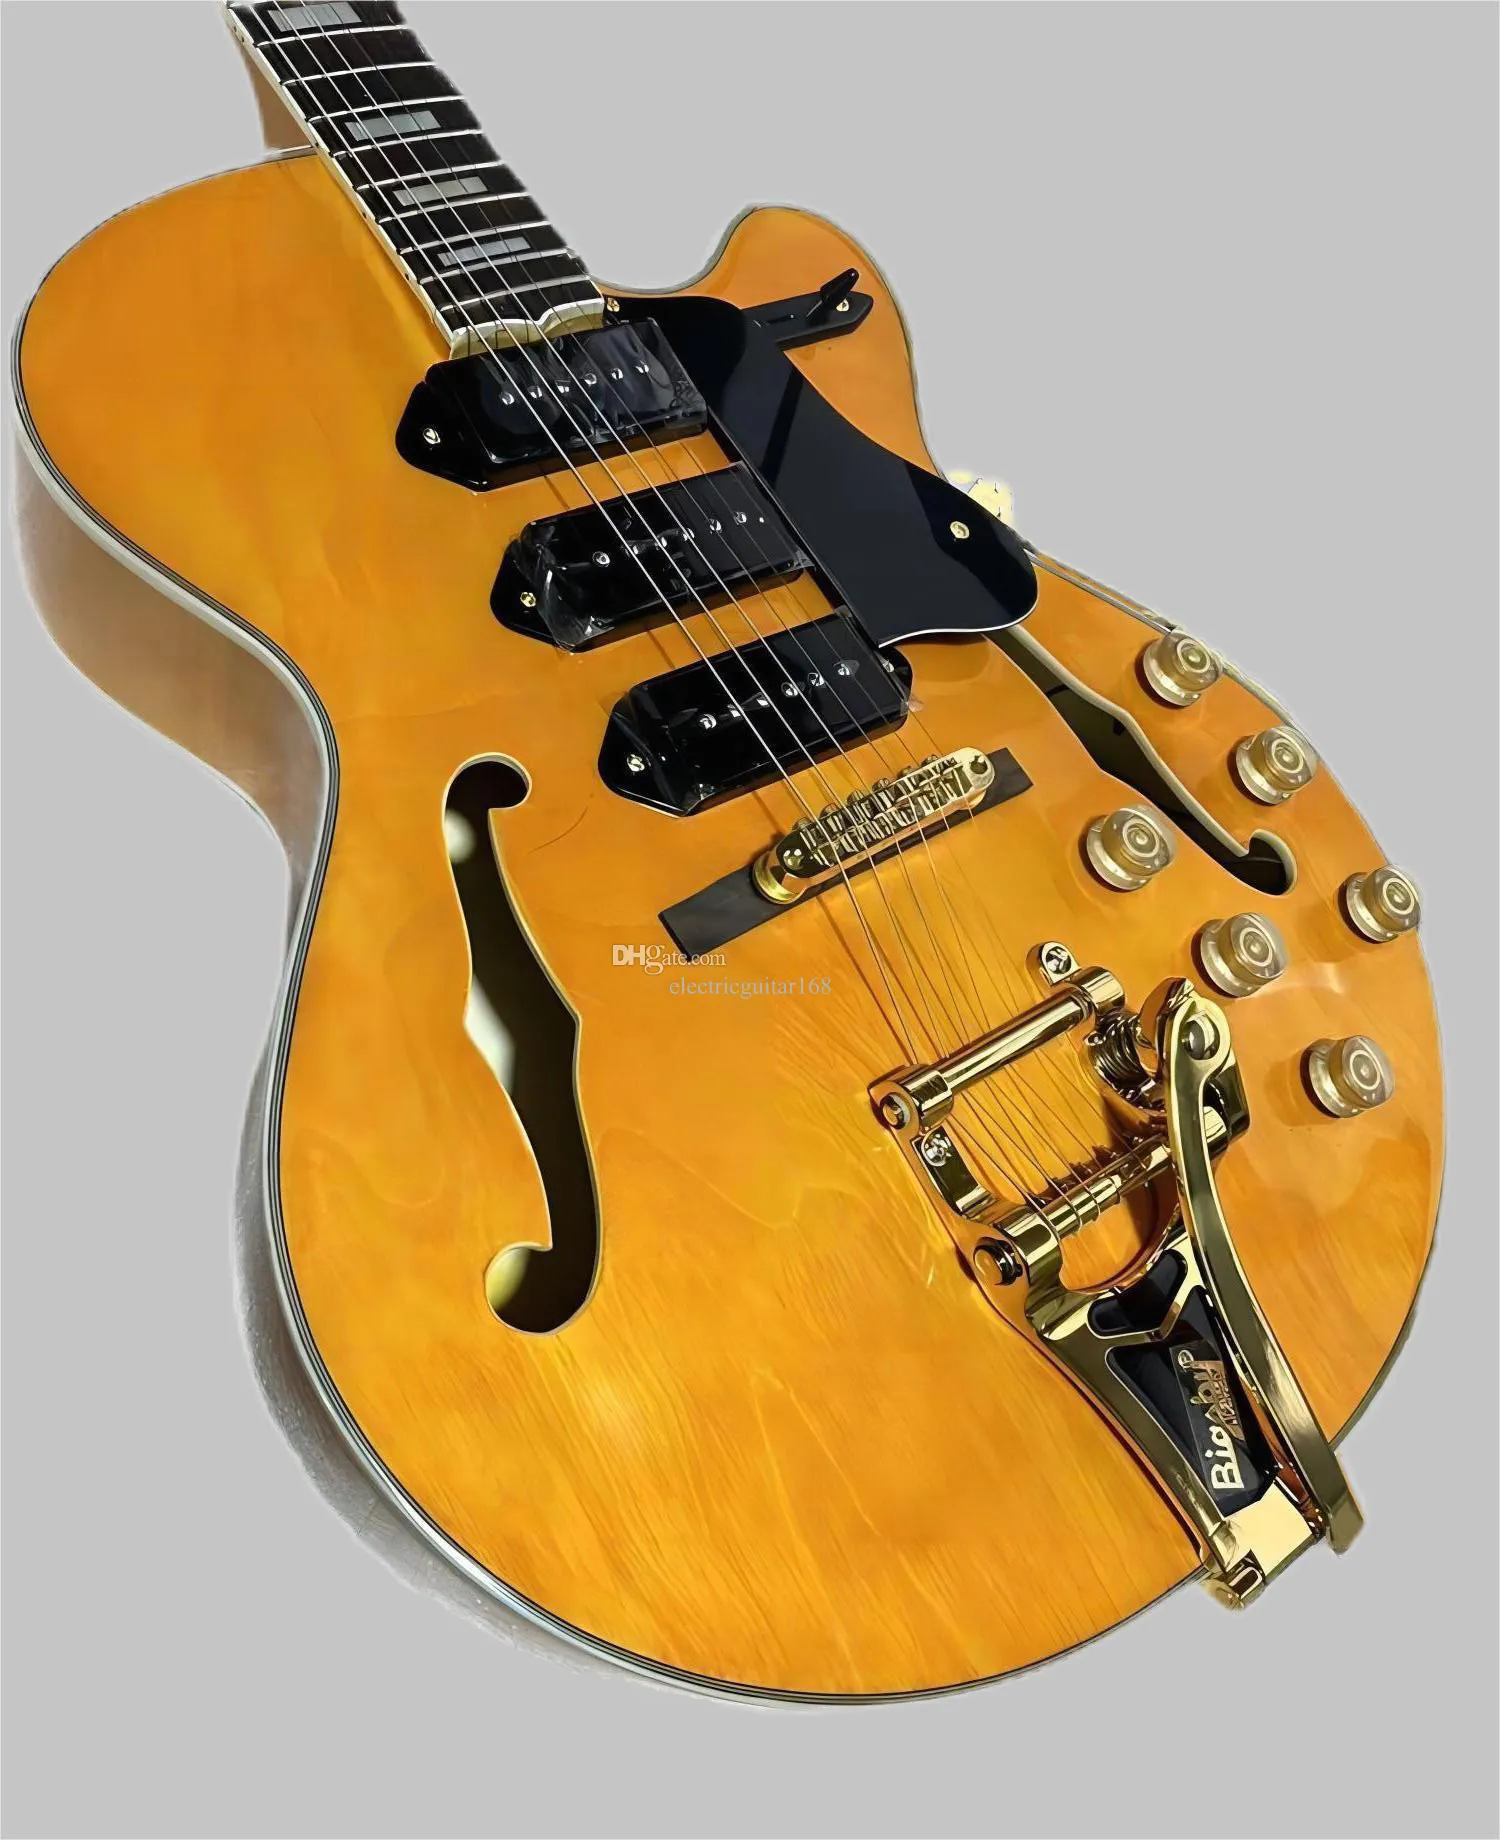 Guitare jaune semi-creuse à six cordes, image réelle, livraison gratuite, en stock